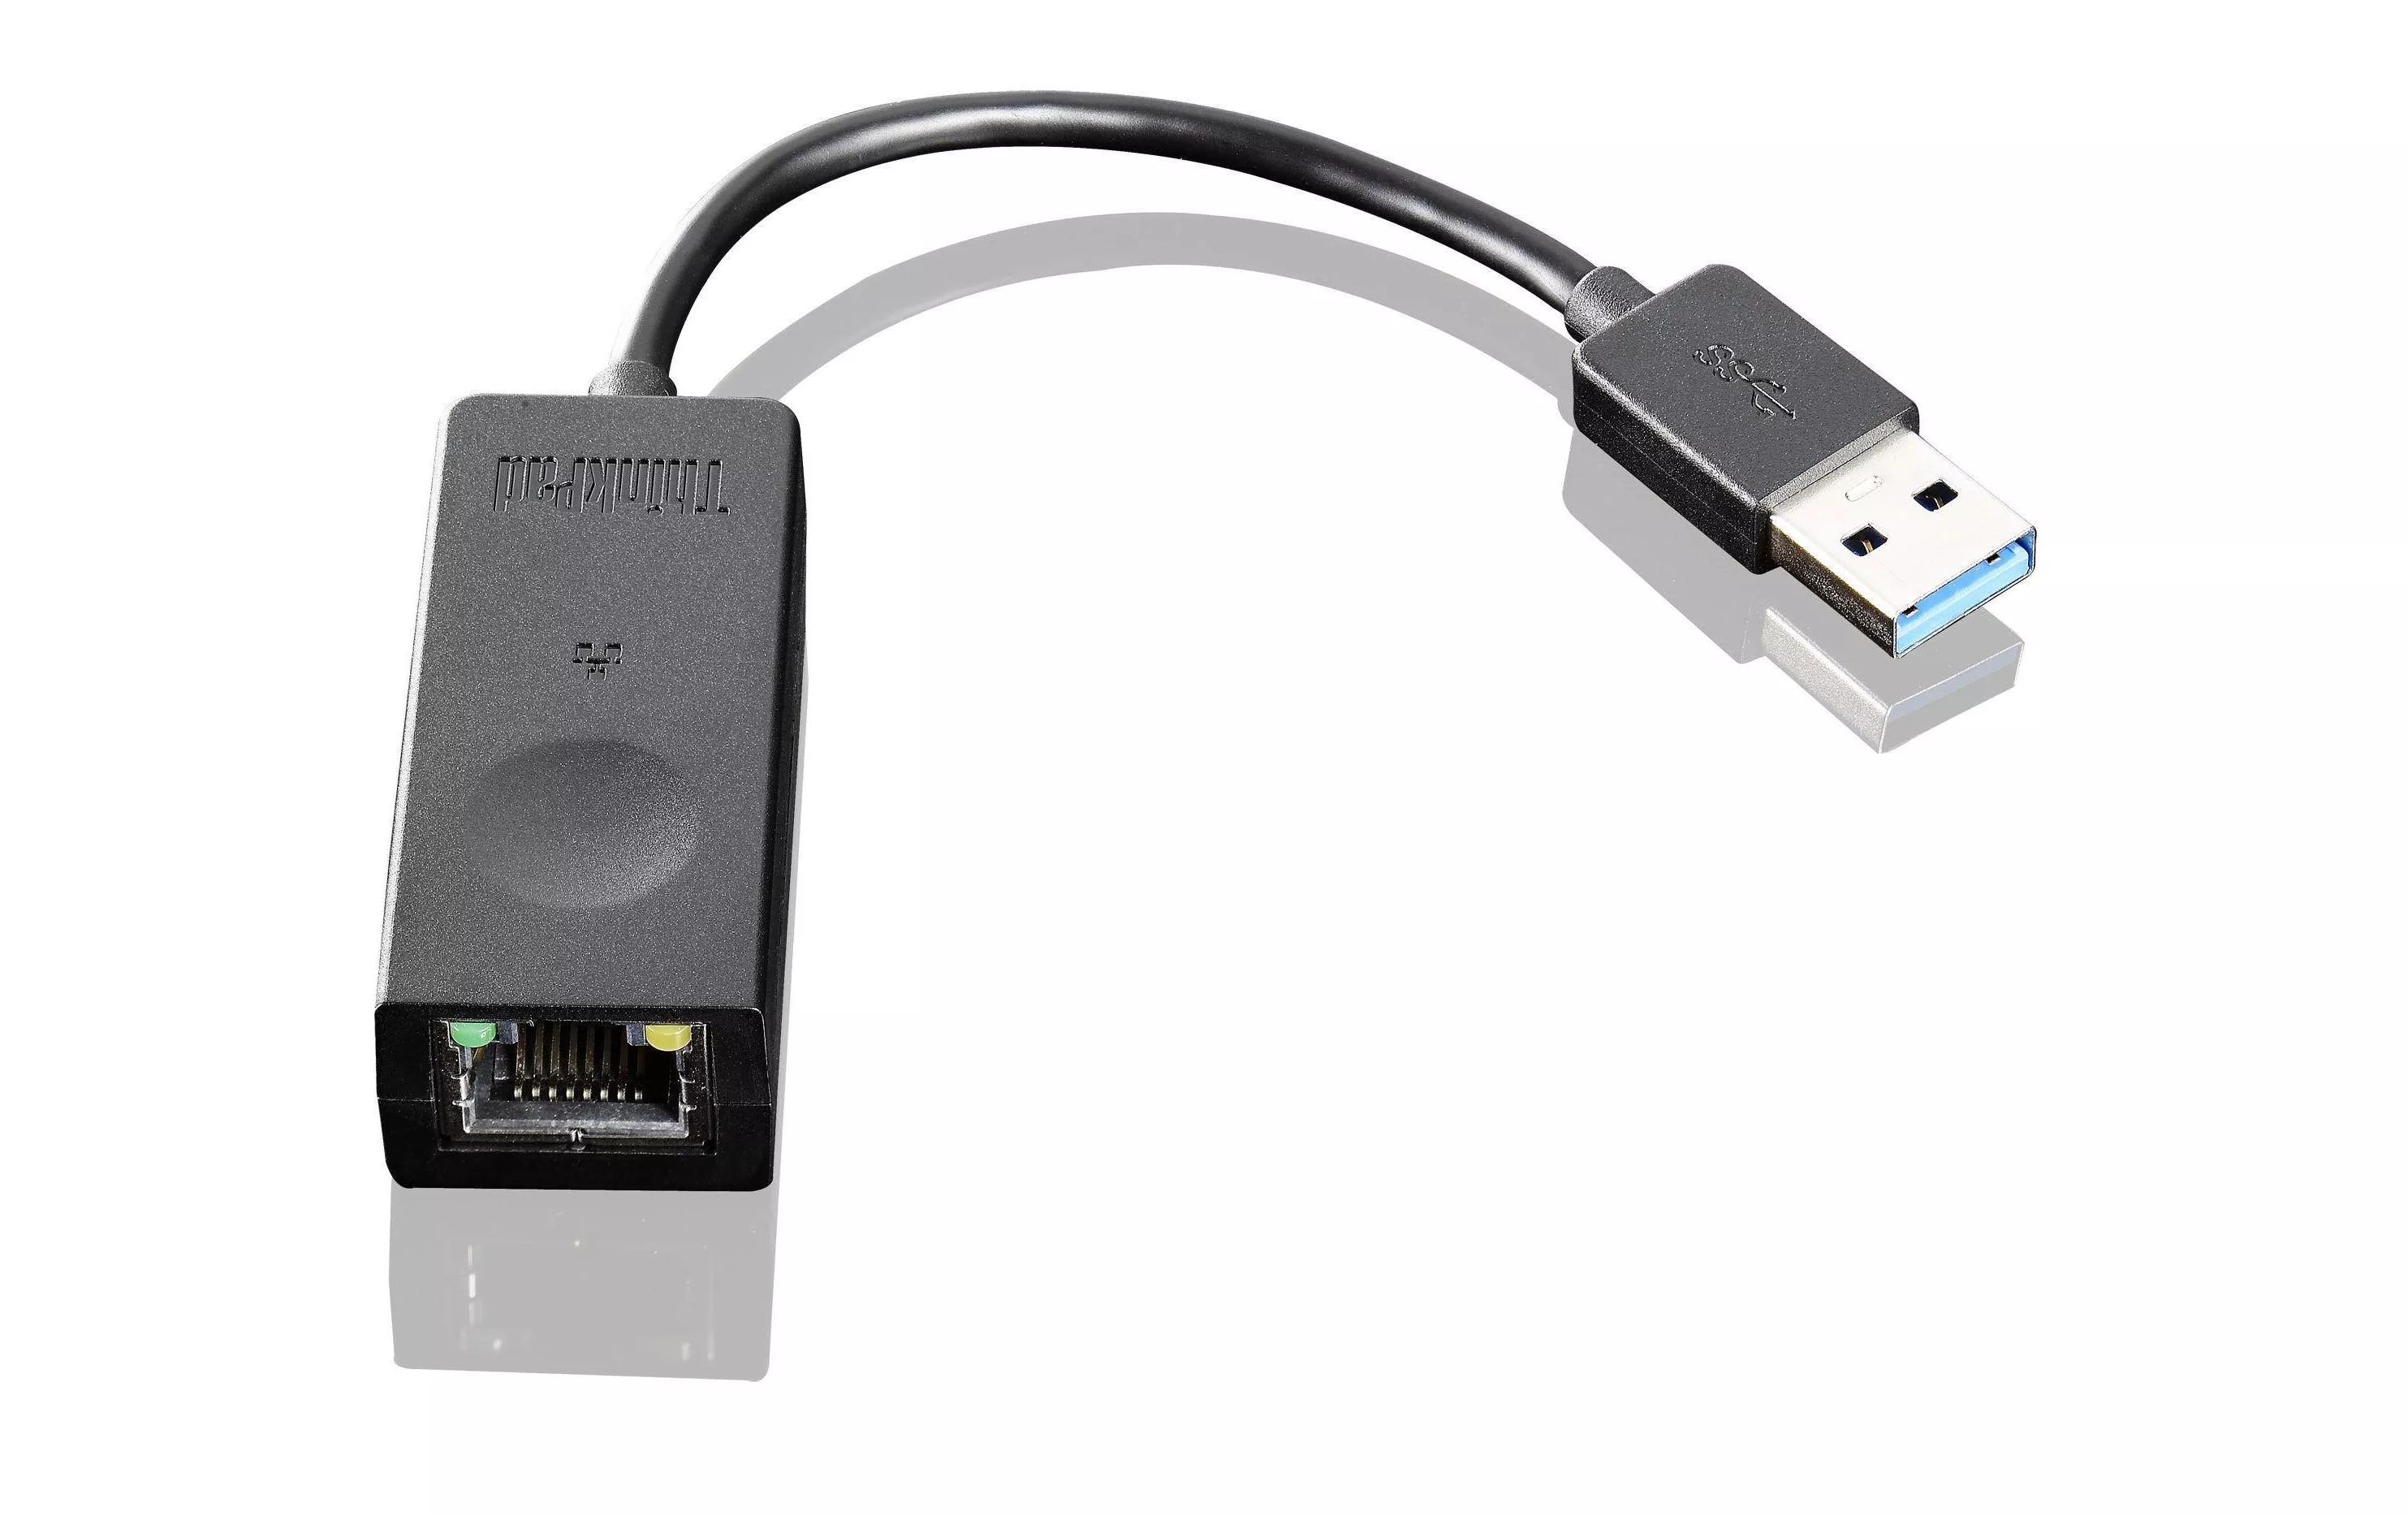 Netzwerk-Adapter 4X90S91830 1Gbps USB 3.0 auf Giga-LAN